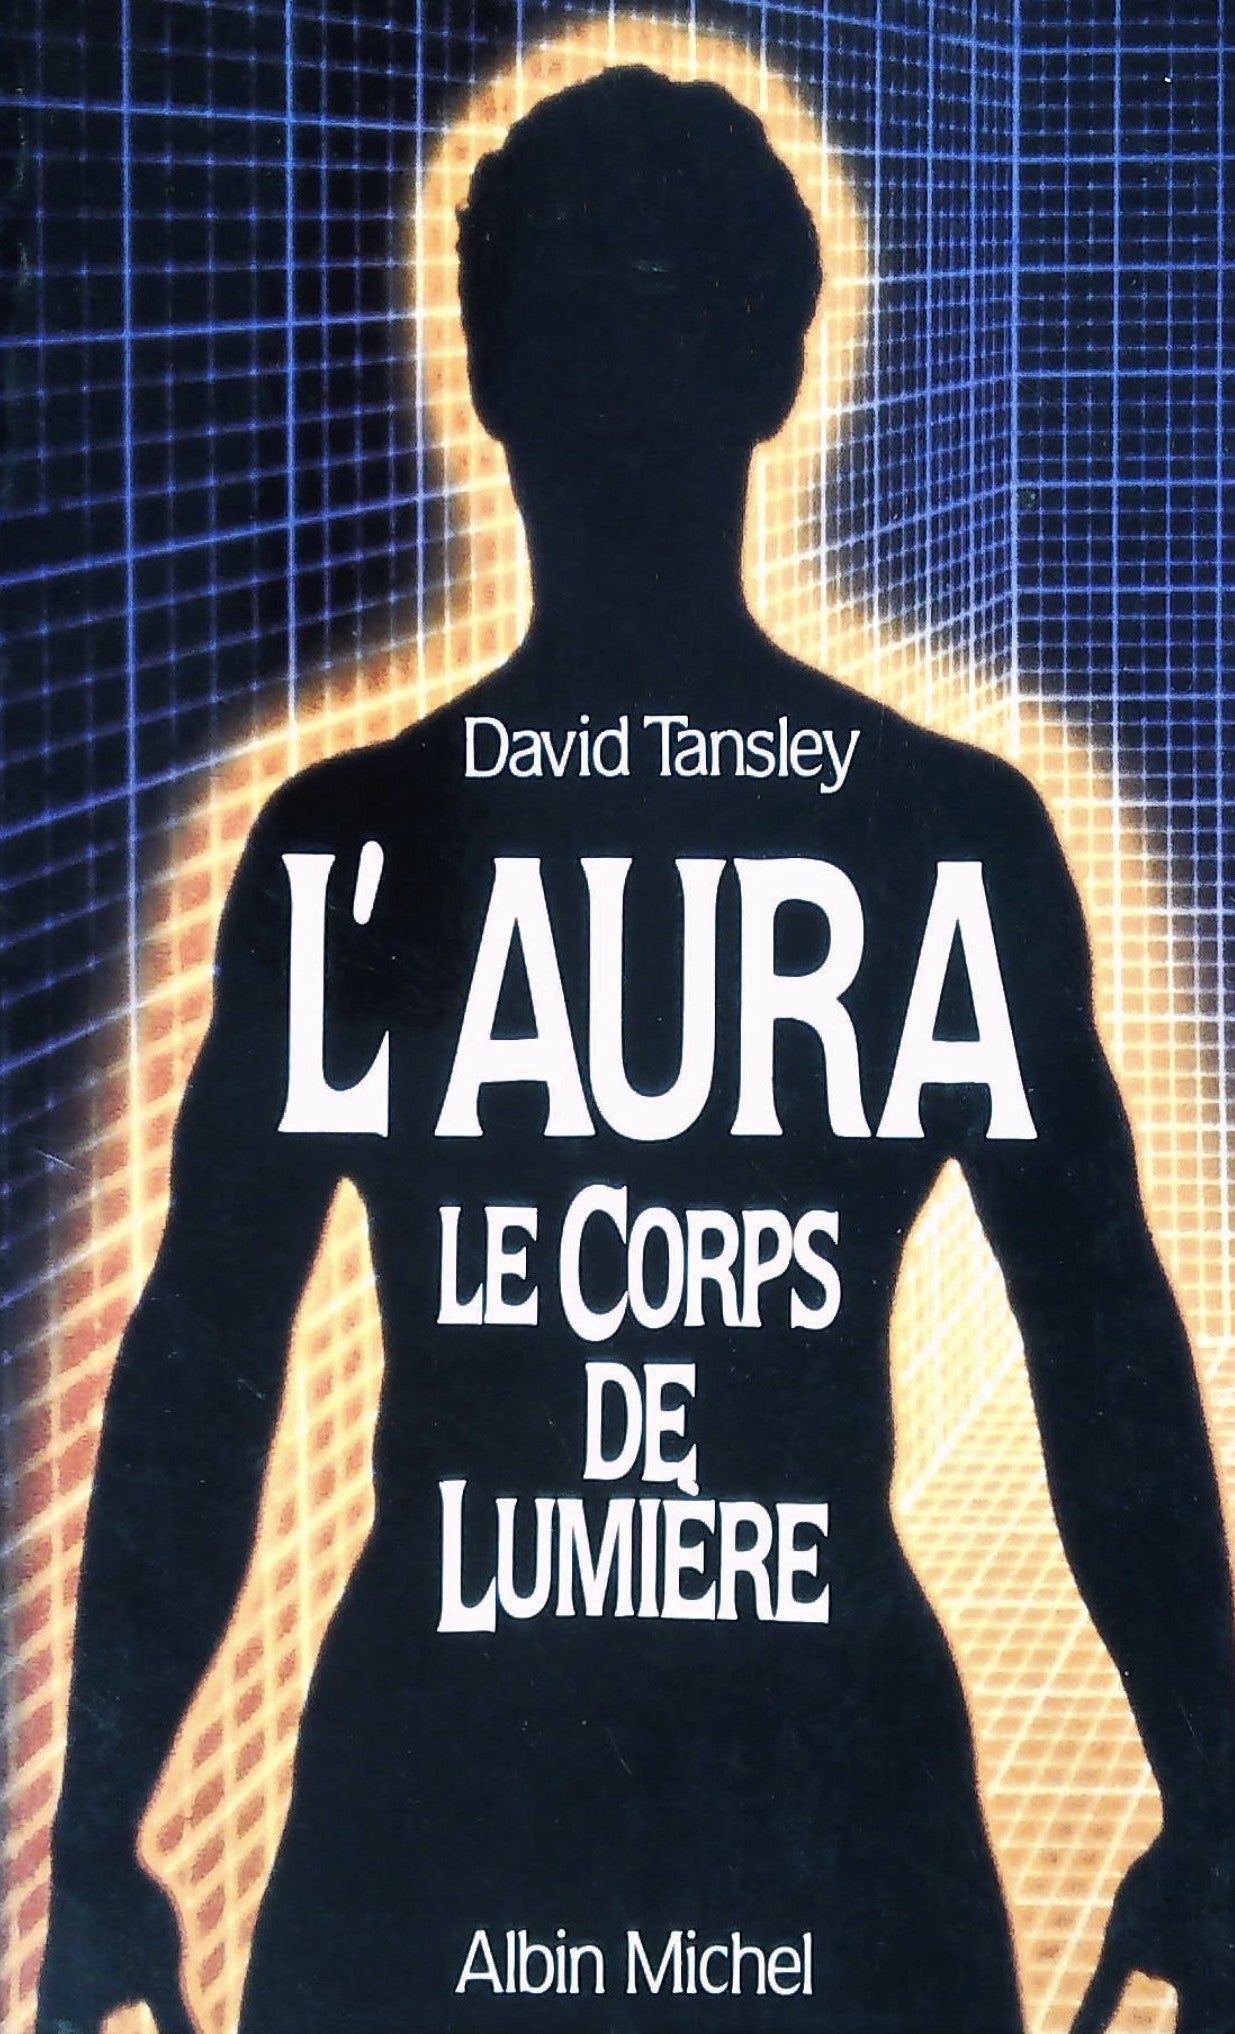 Livre ISBN 2226030190 L'aura le corps de lumière (David Tansley)